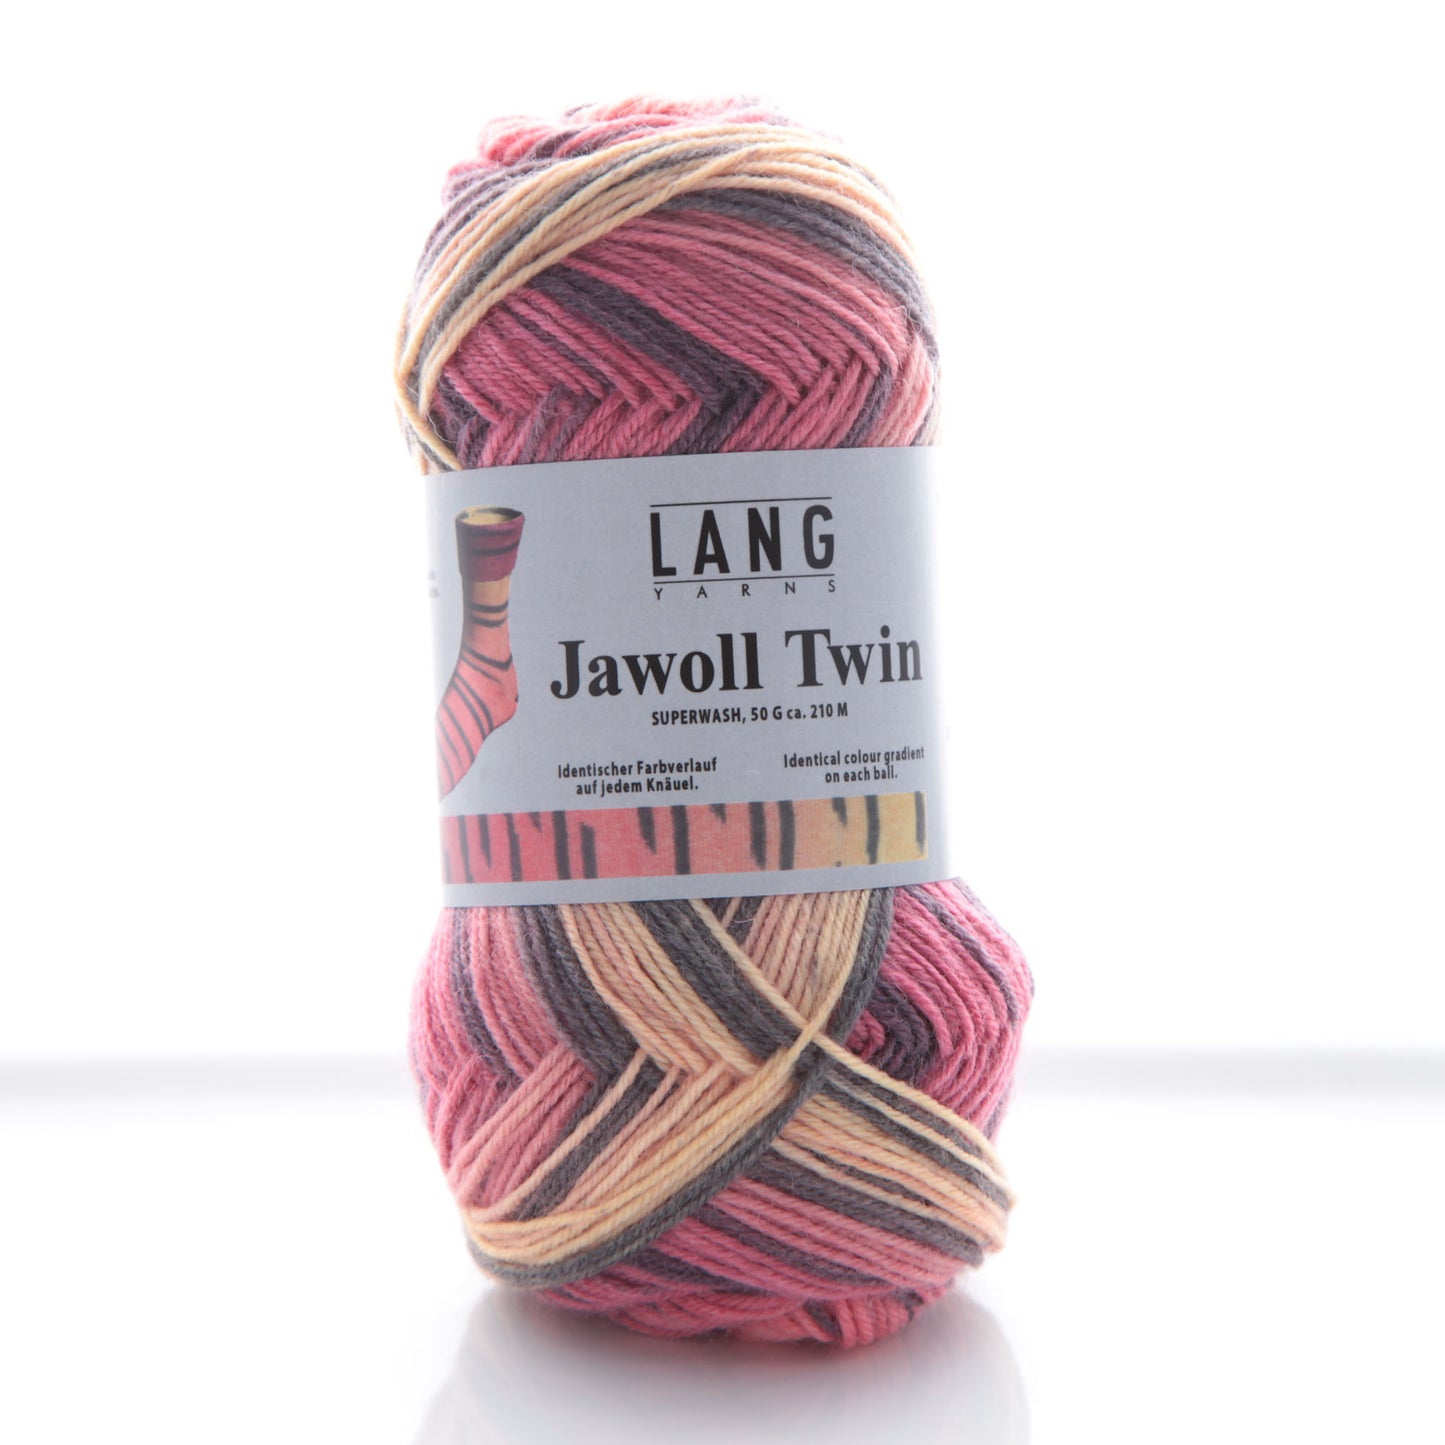 Jawoll Twin Sock Yarn